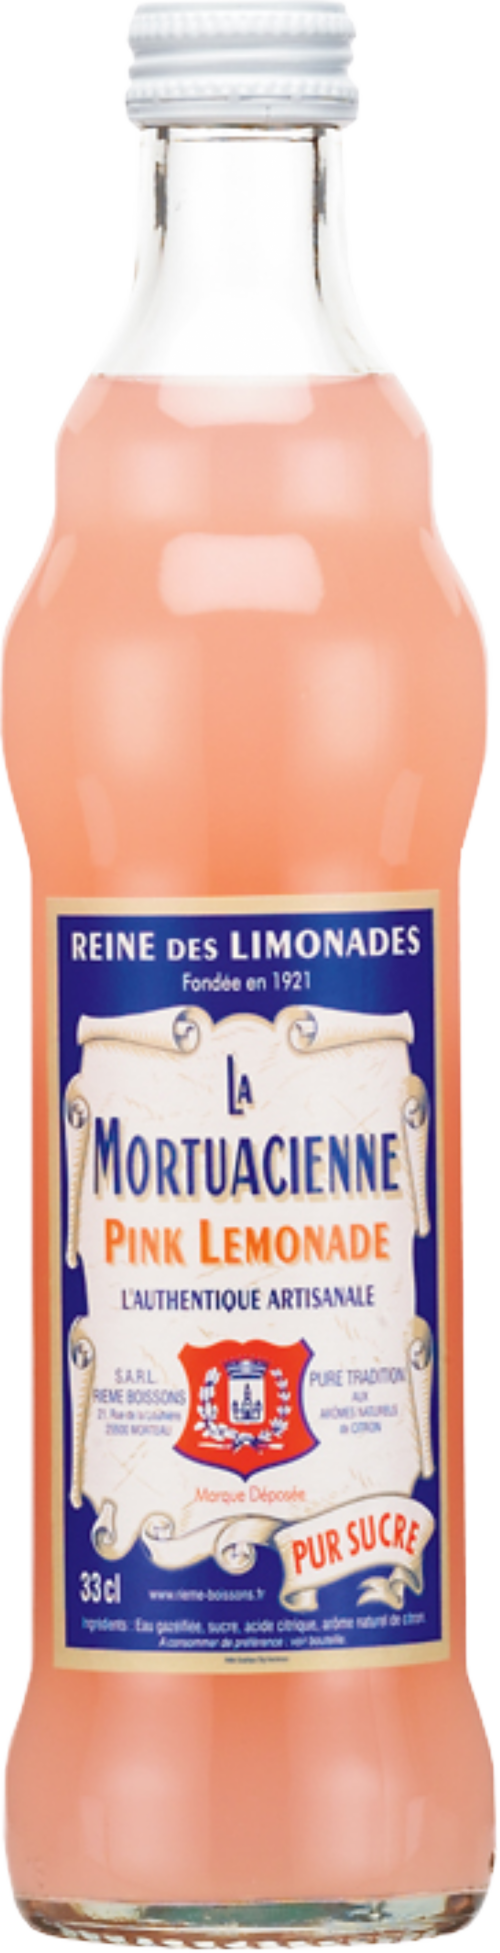 LA MORTUACIENNE Pink Lemonade 330ml